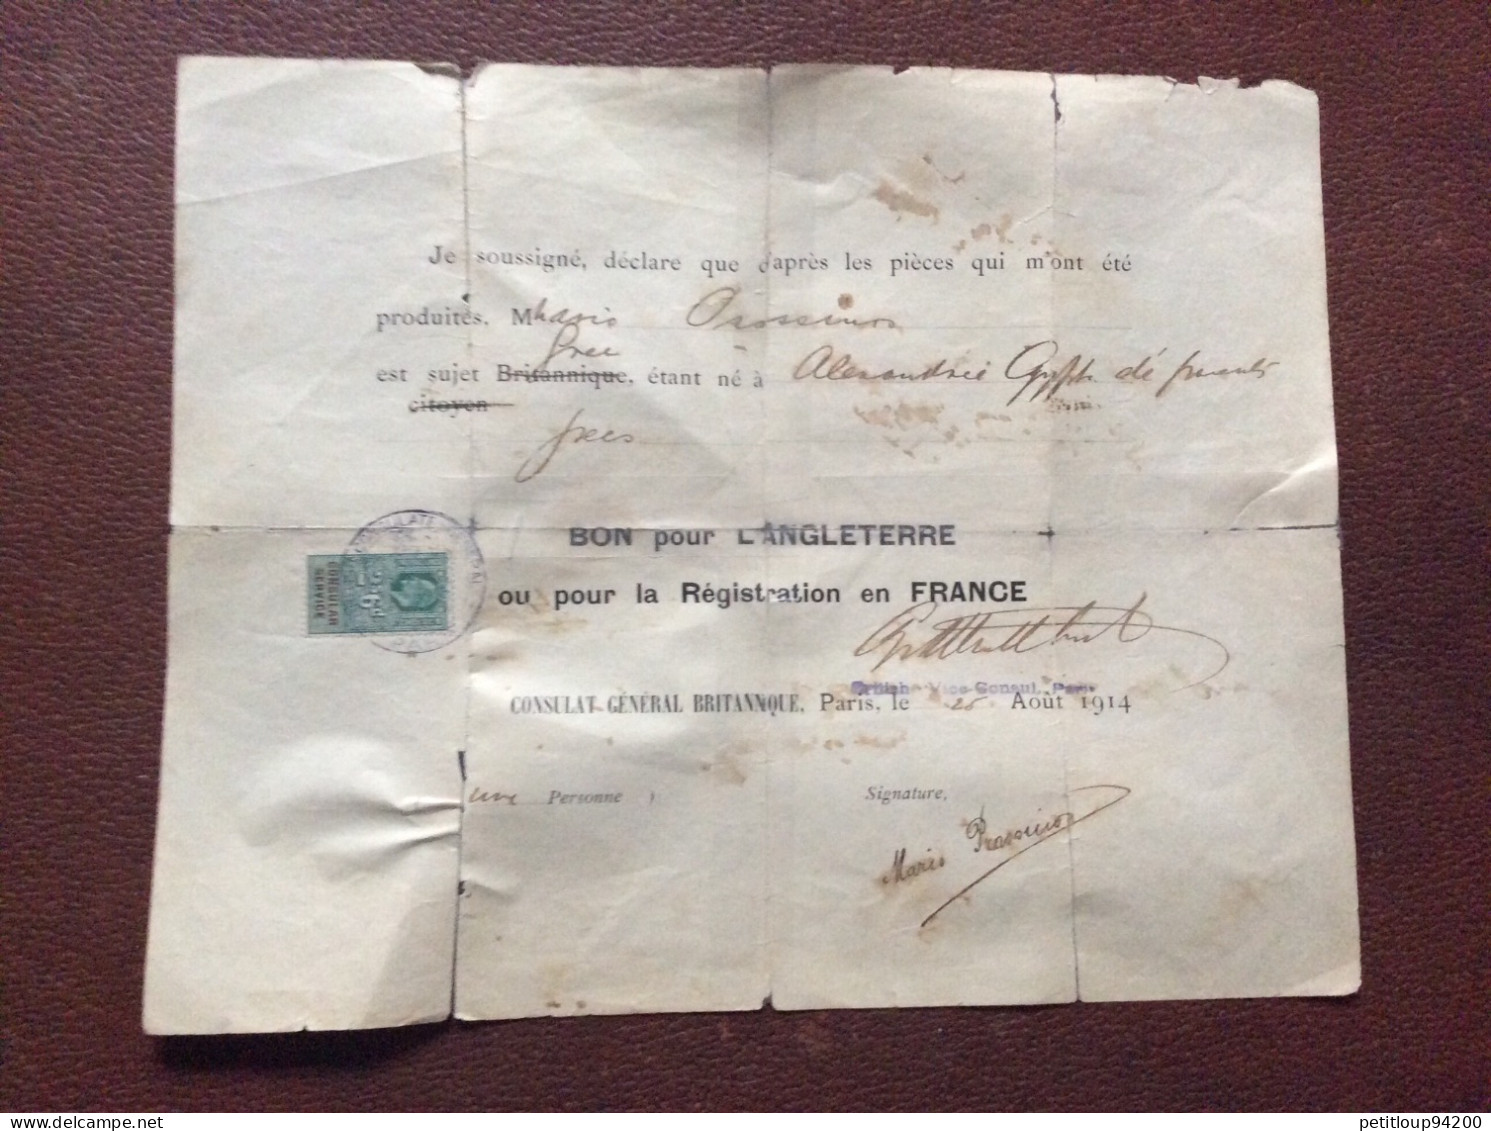 TIMBRE FISCAL SUR DOCUMENT Bon Pour L’ANGLETERRE  Registration En FRANCE  *2s 6d  CONSULAT GENERAL BRITANIQUE  1914 - Fiscali